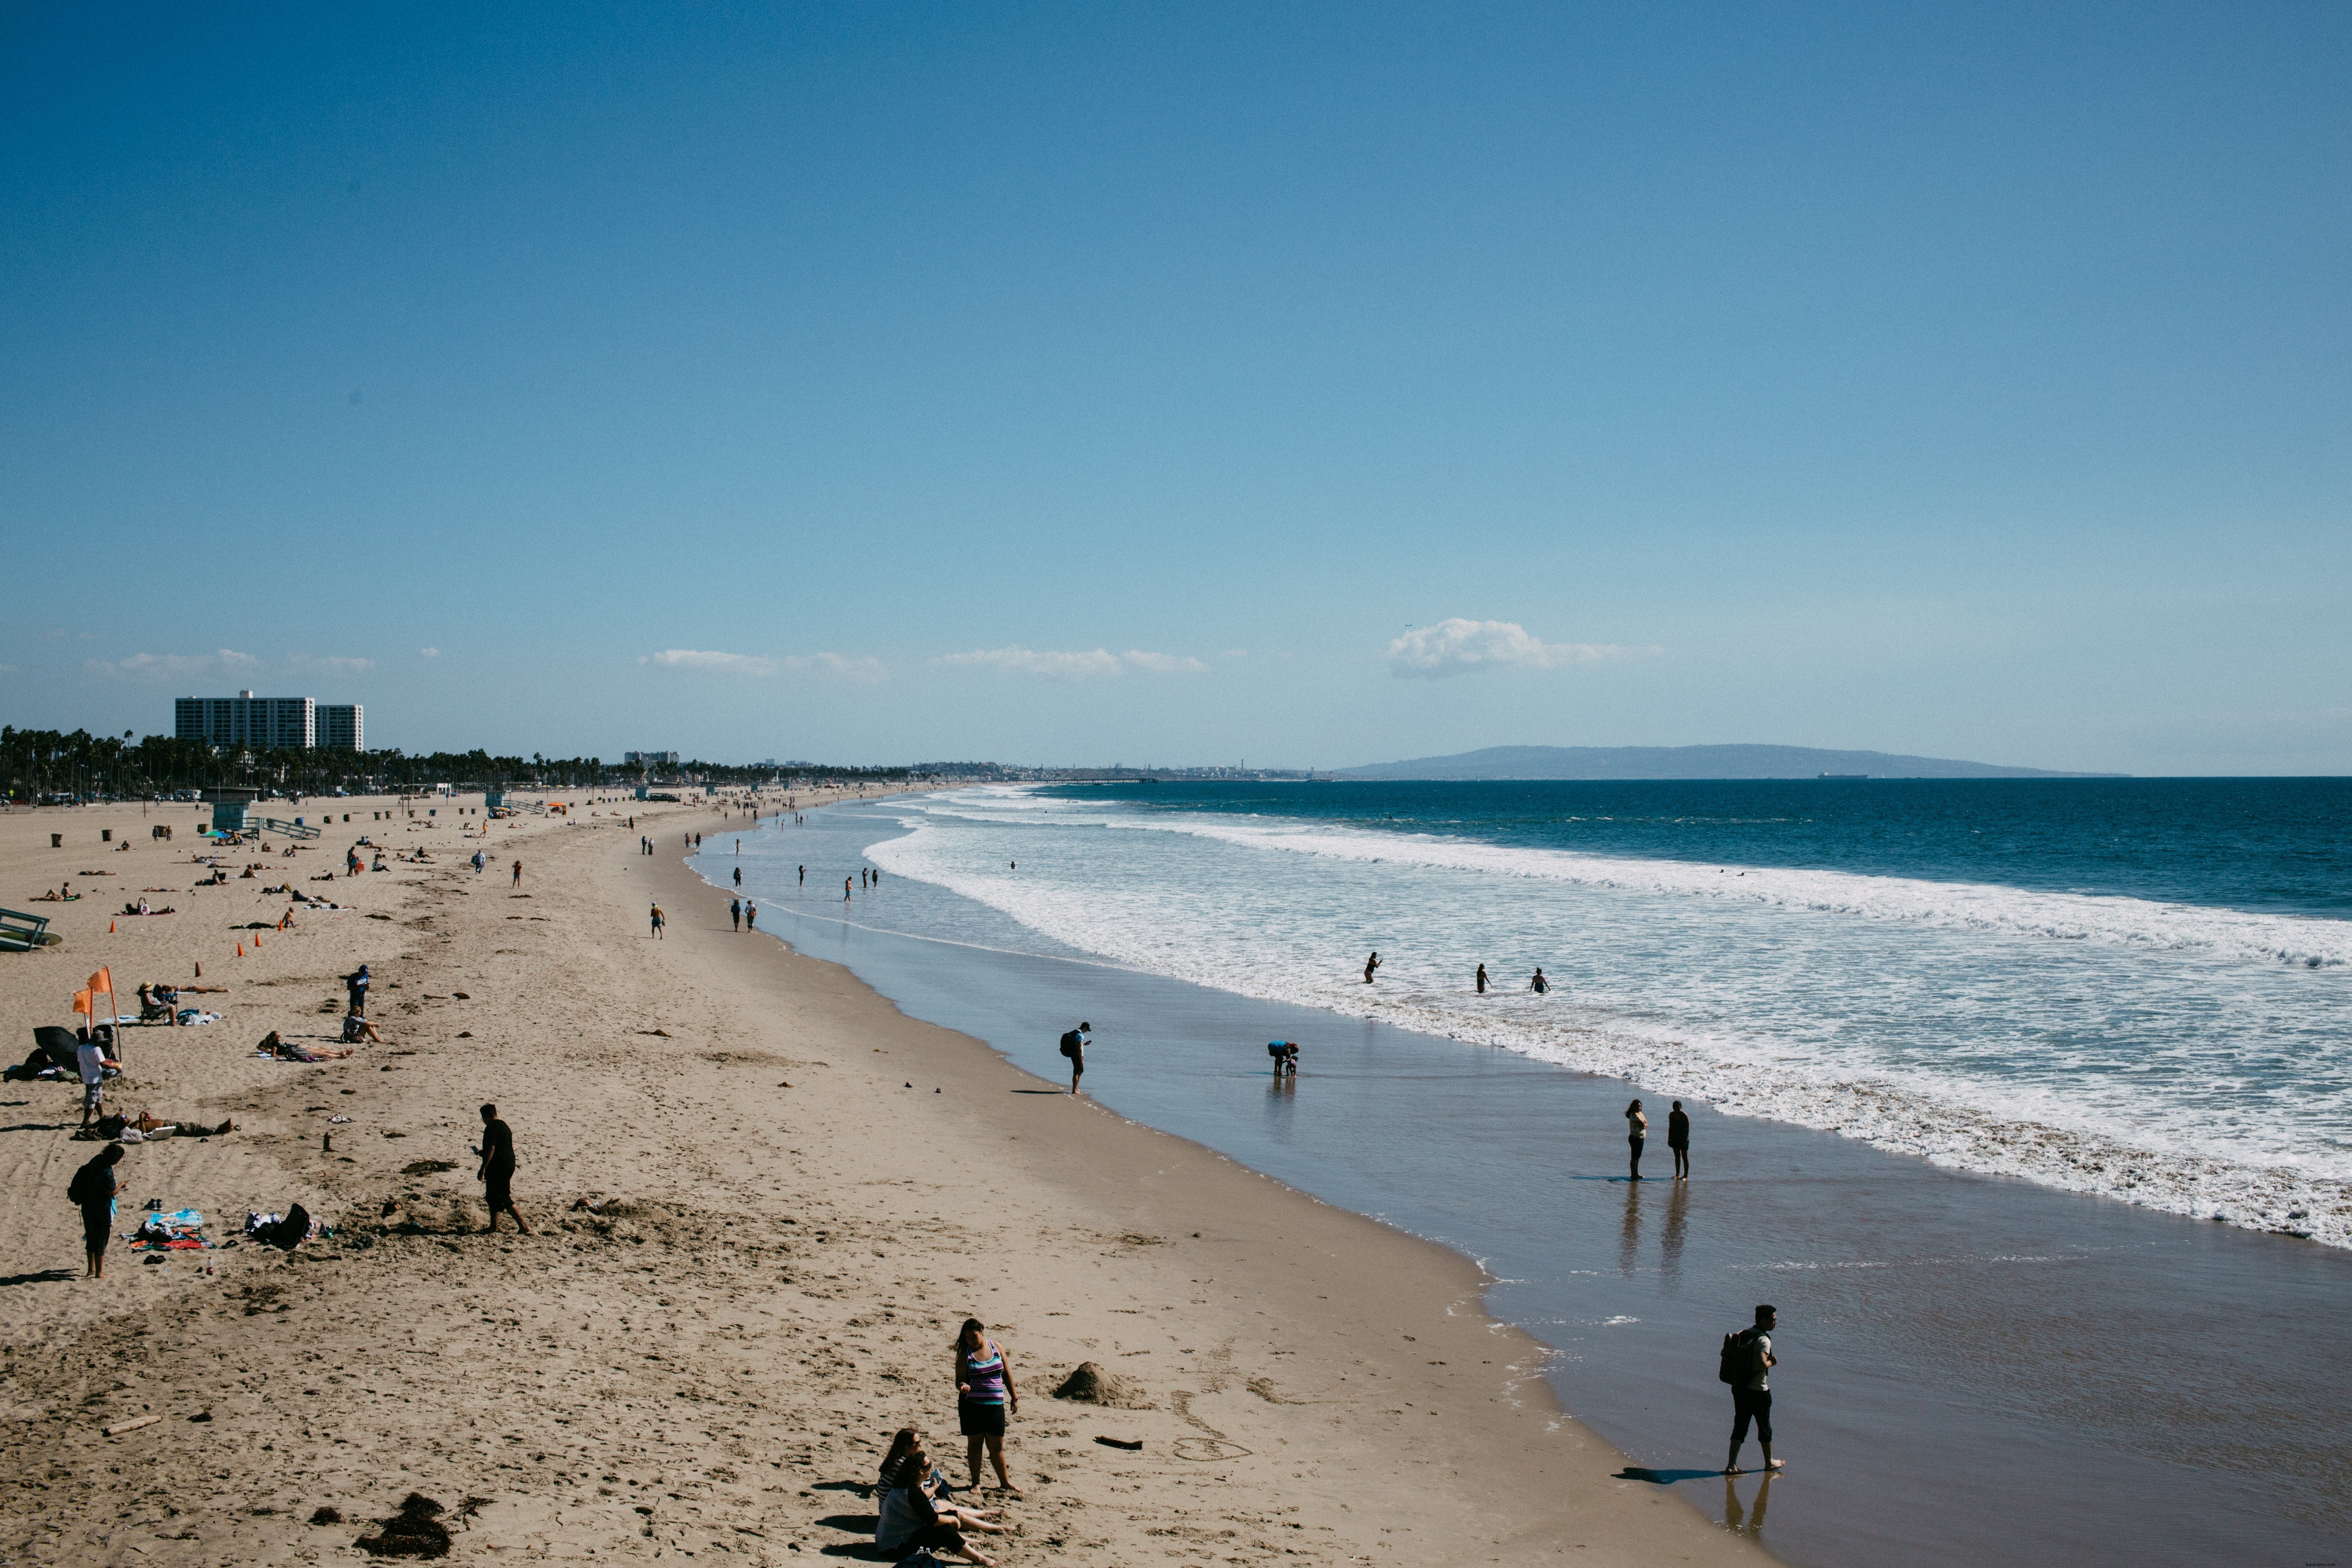 Personnes bénéficiant d une journée à la plage en été Photo